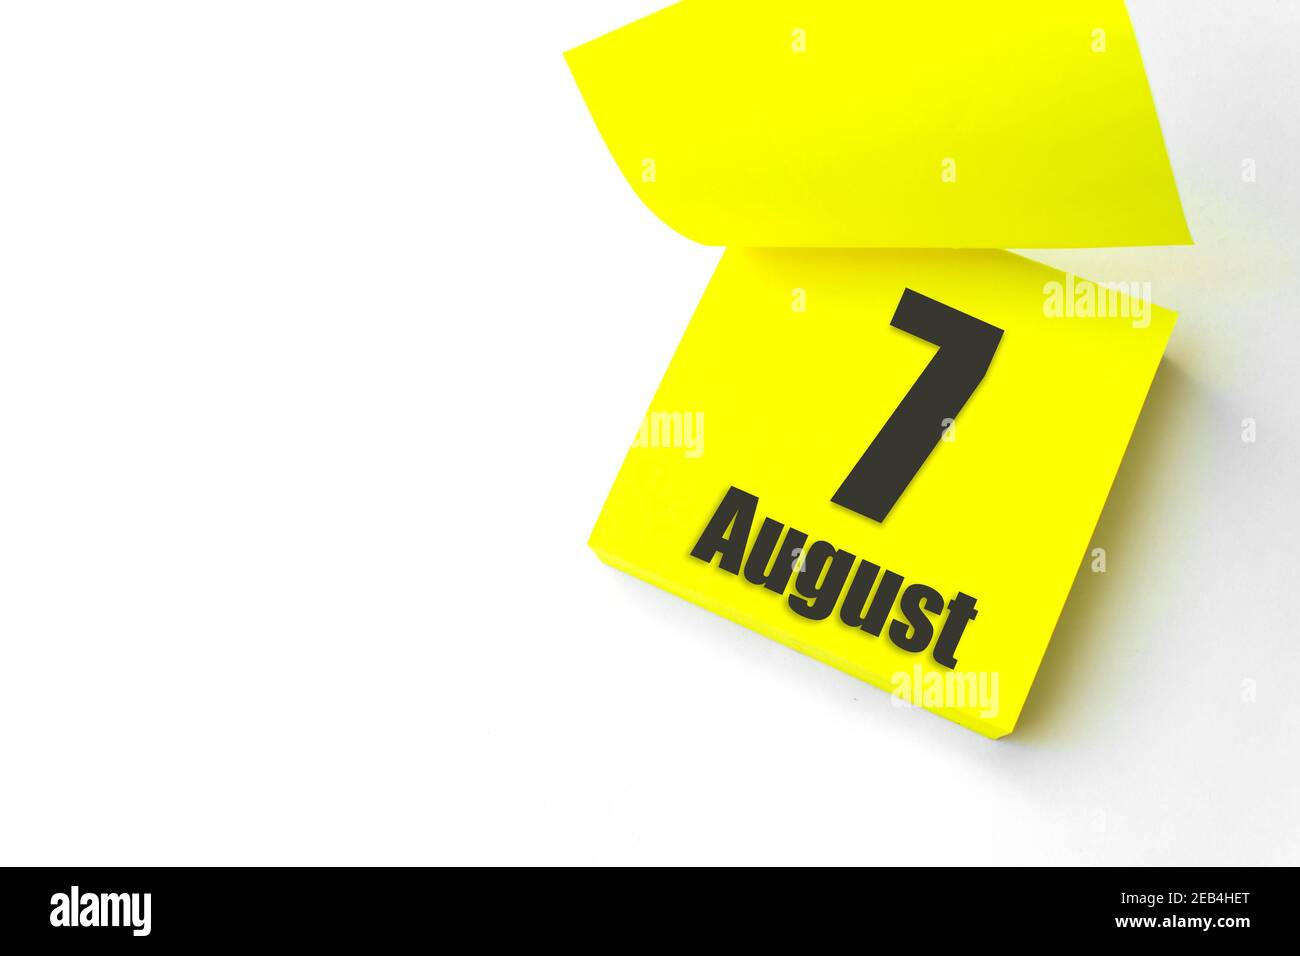 7 août. Jour 7 du mois, date du calendrier. Gros plan papier vierge autocollant de rappel jaune sur fond blanc. Concept mois d'été, jour de l'année Banque D'Images